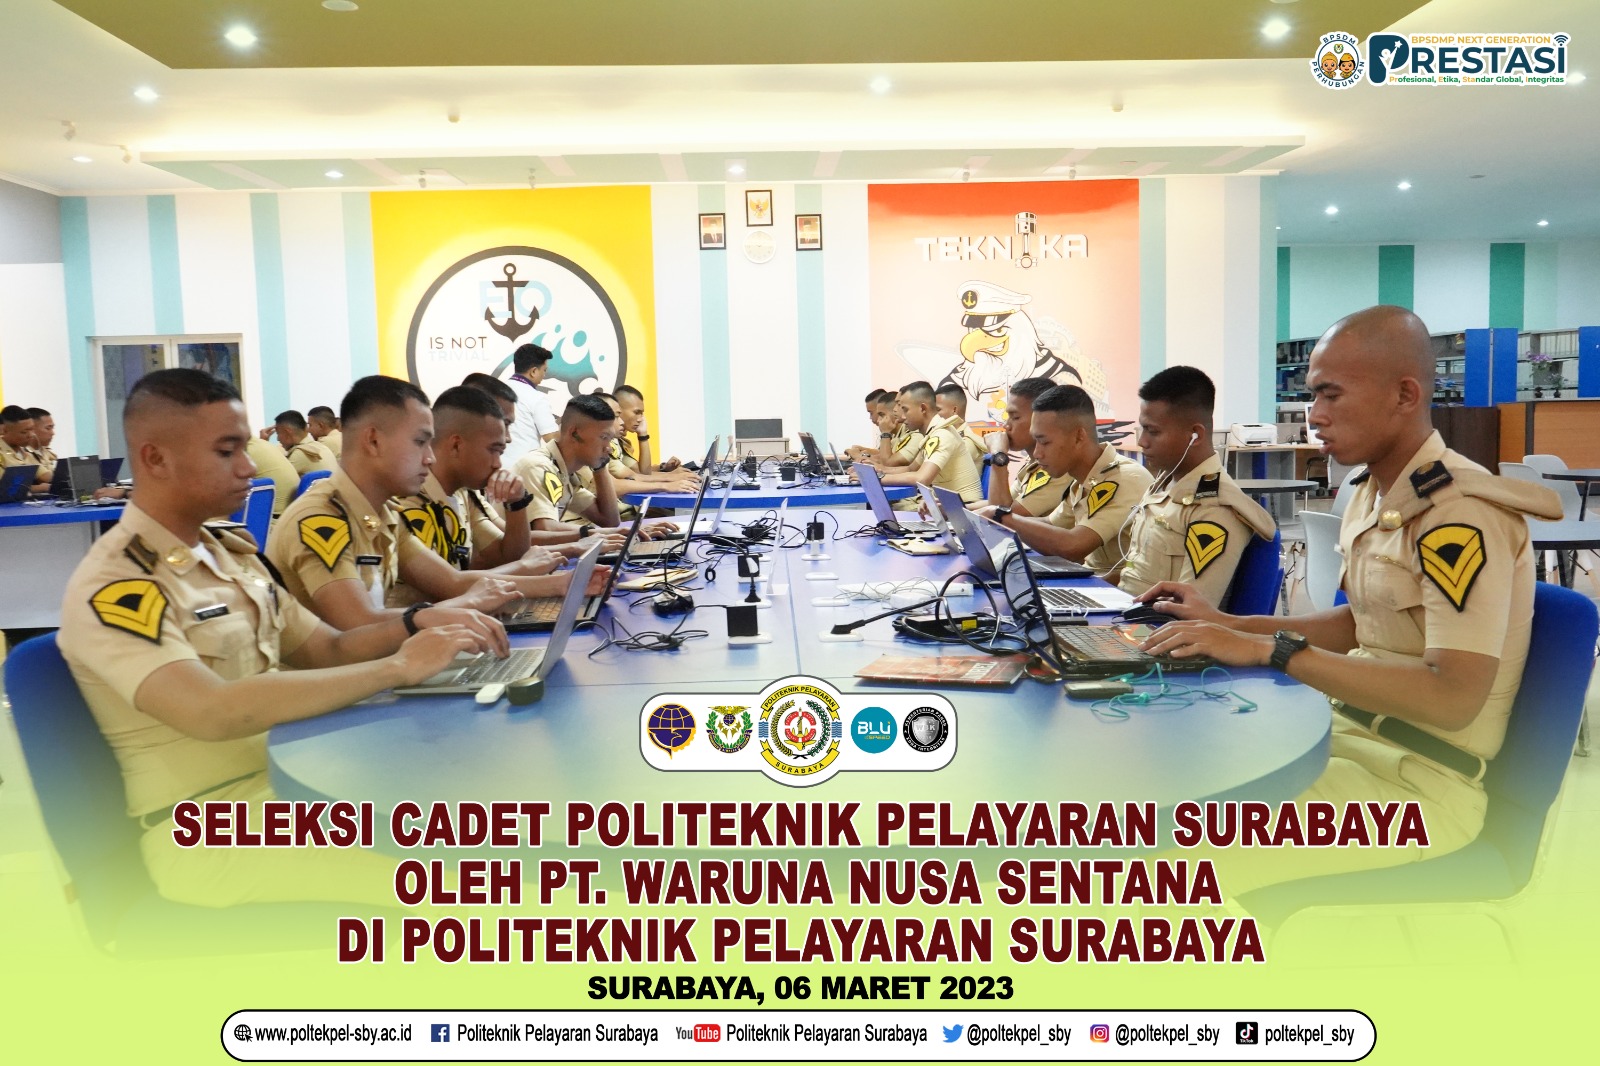 PT. Waruna Nusa Sentana Buka Peluang Untuk Melaksanakan Prala Bagi Cadet Poltekpel Surabaya